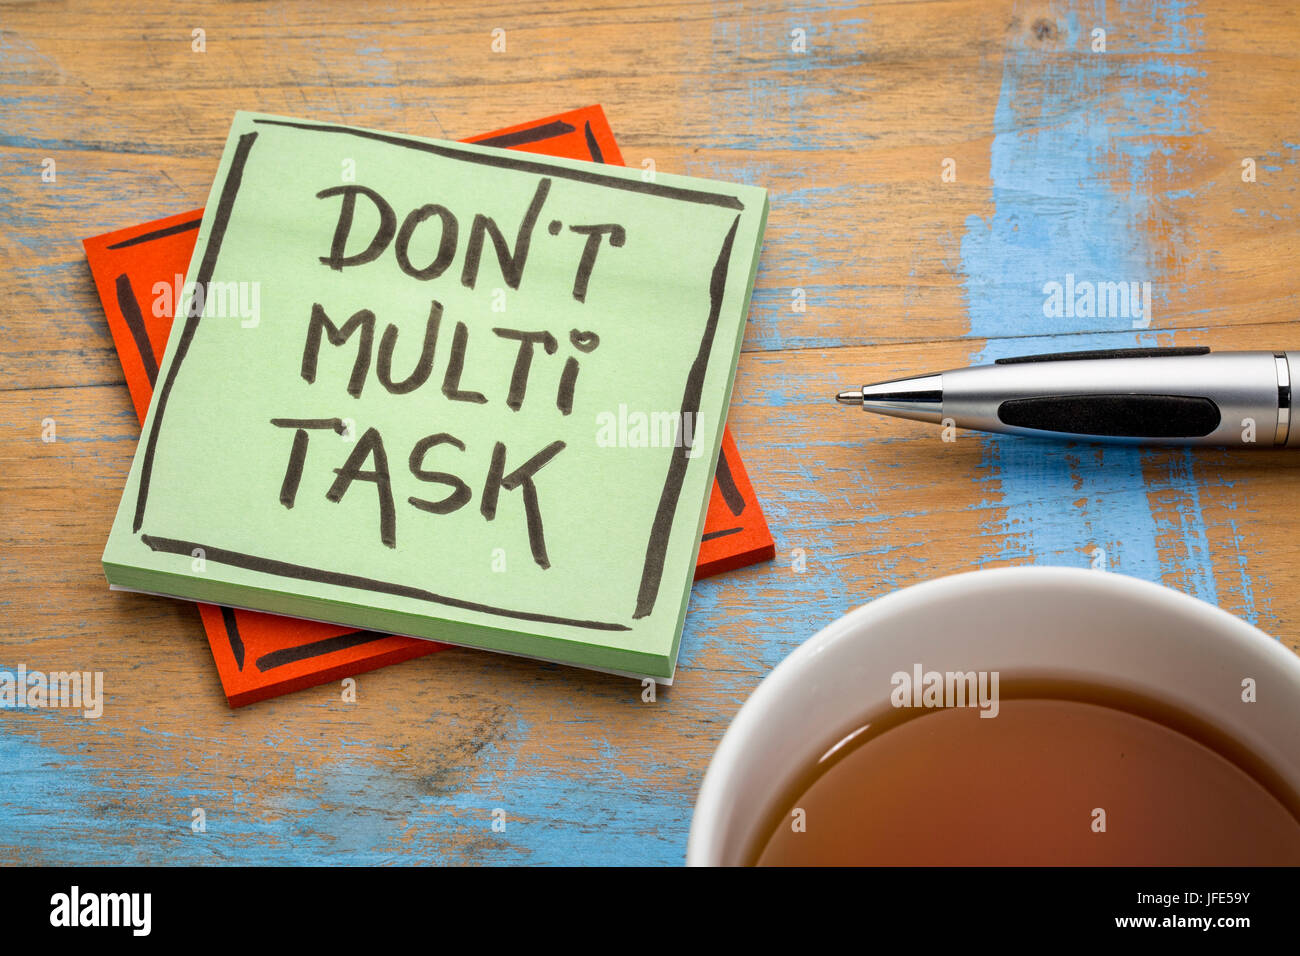 Non effettuano il multitasking - efficienza consigli su una nota adesiva con una tazza di tè Foto Stock